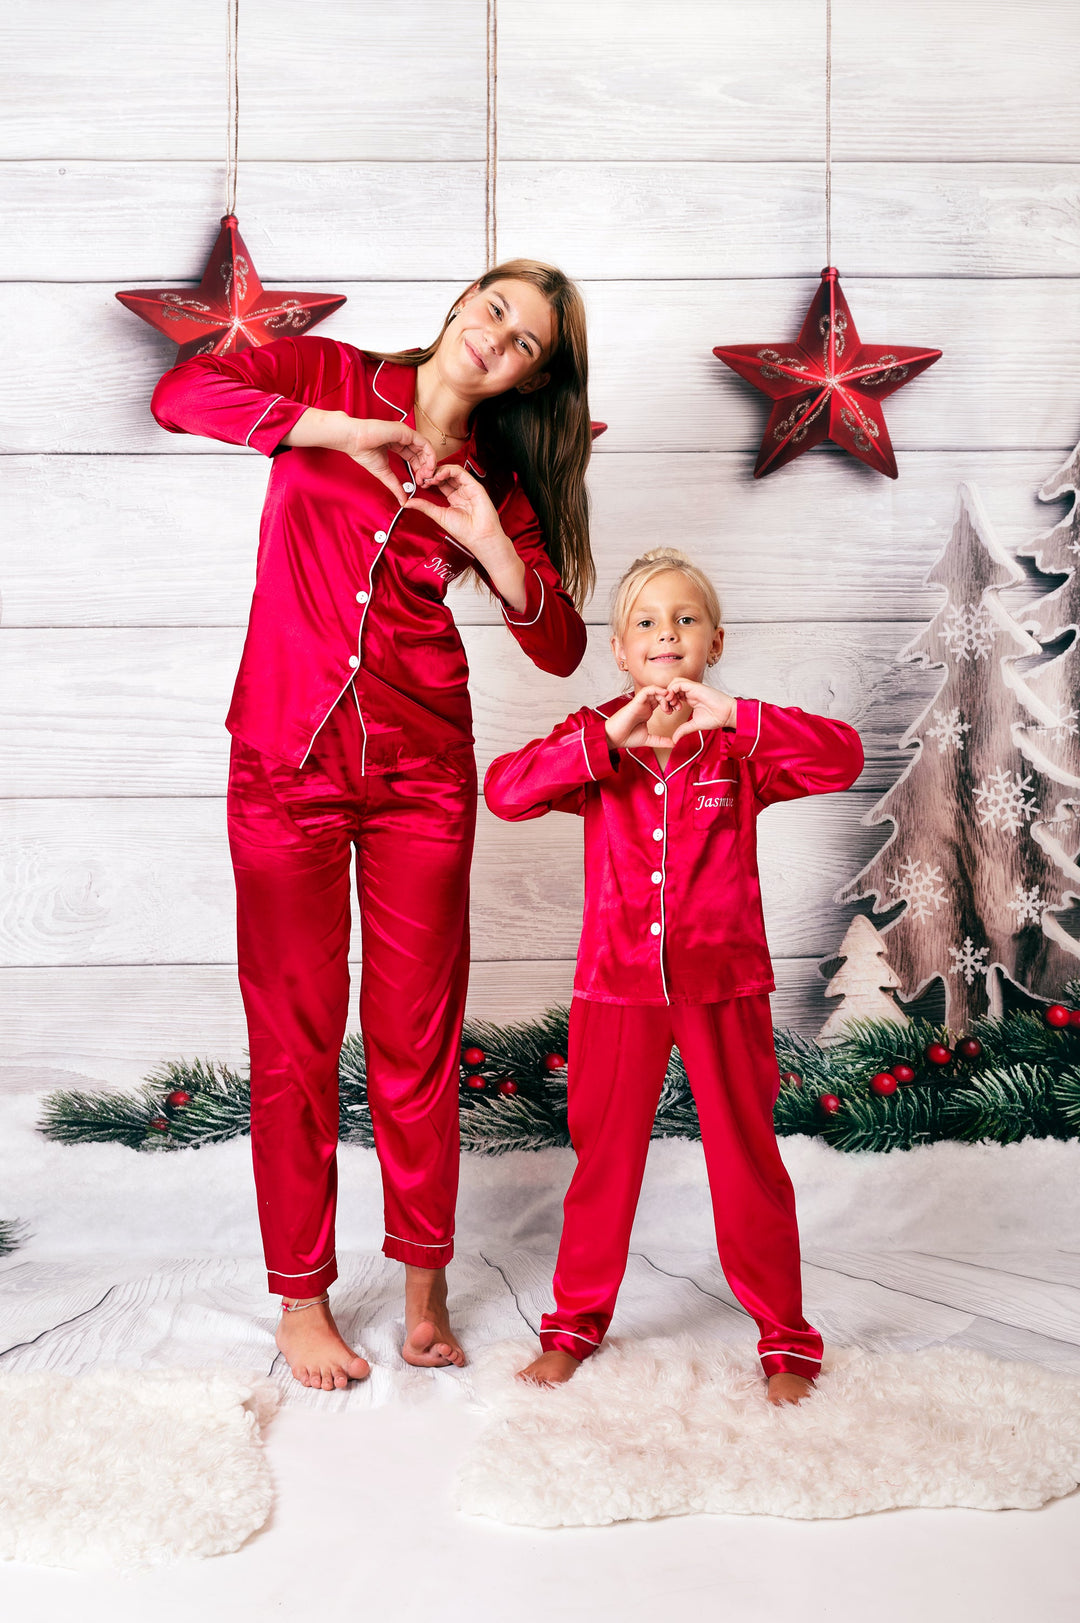 Family Xmas Satin Pjs For, Custom Satin Pajamas, Christmas Pajamas